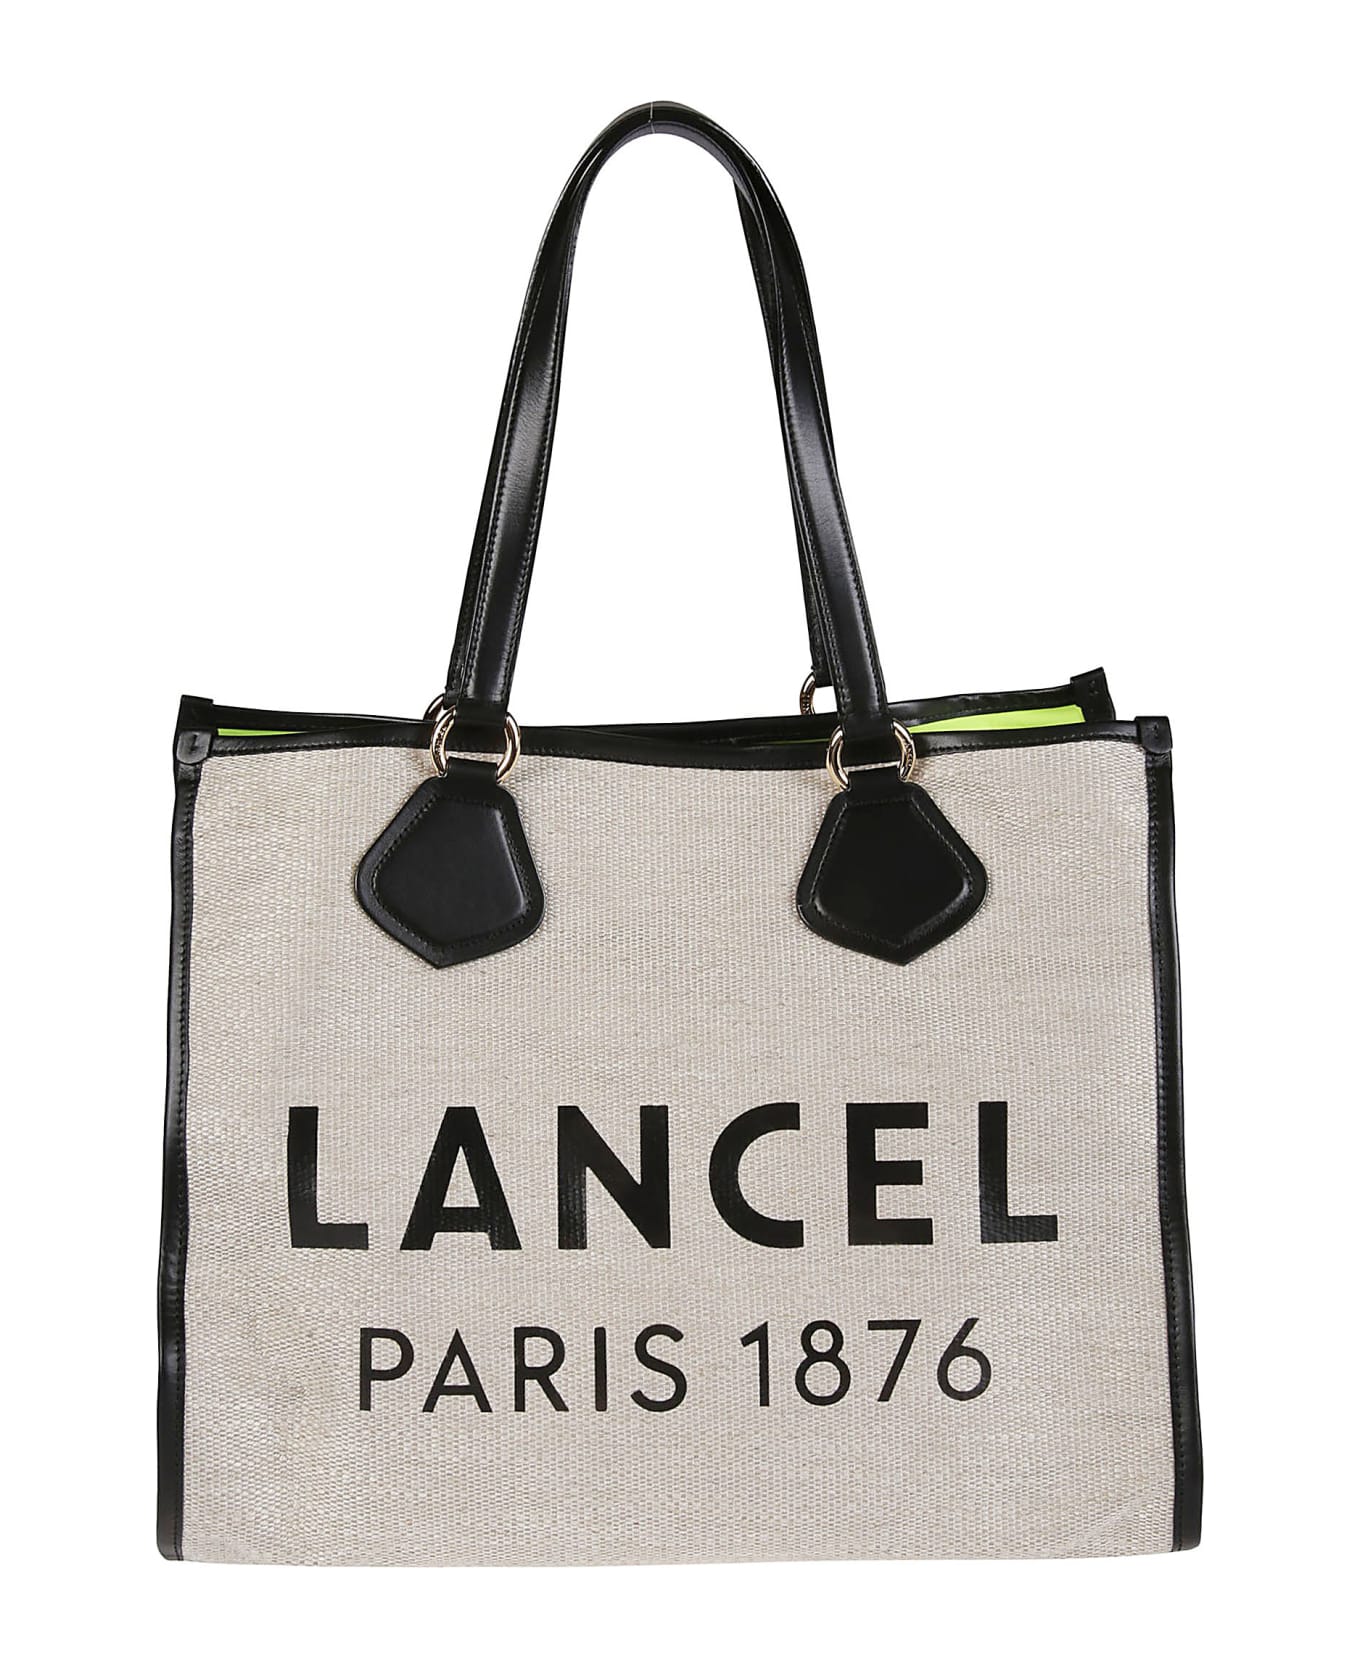 Lancel Summer Large Tote Bag - A Naturel/noir